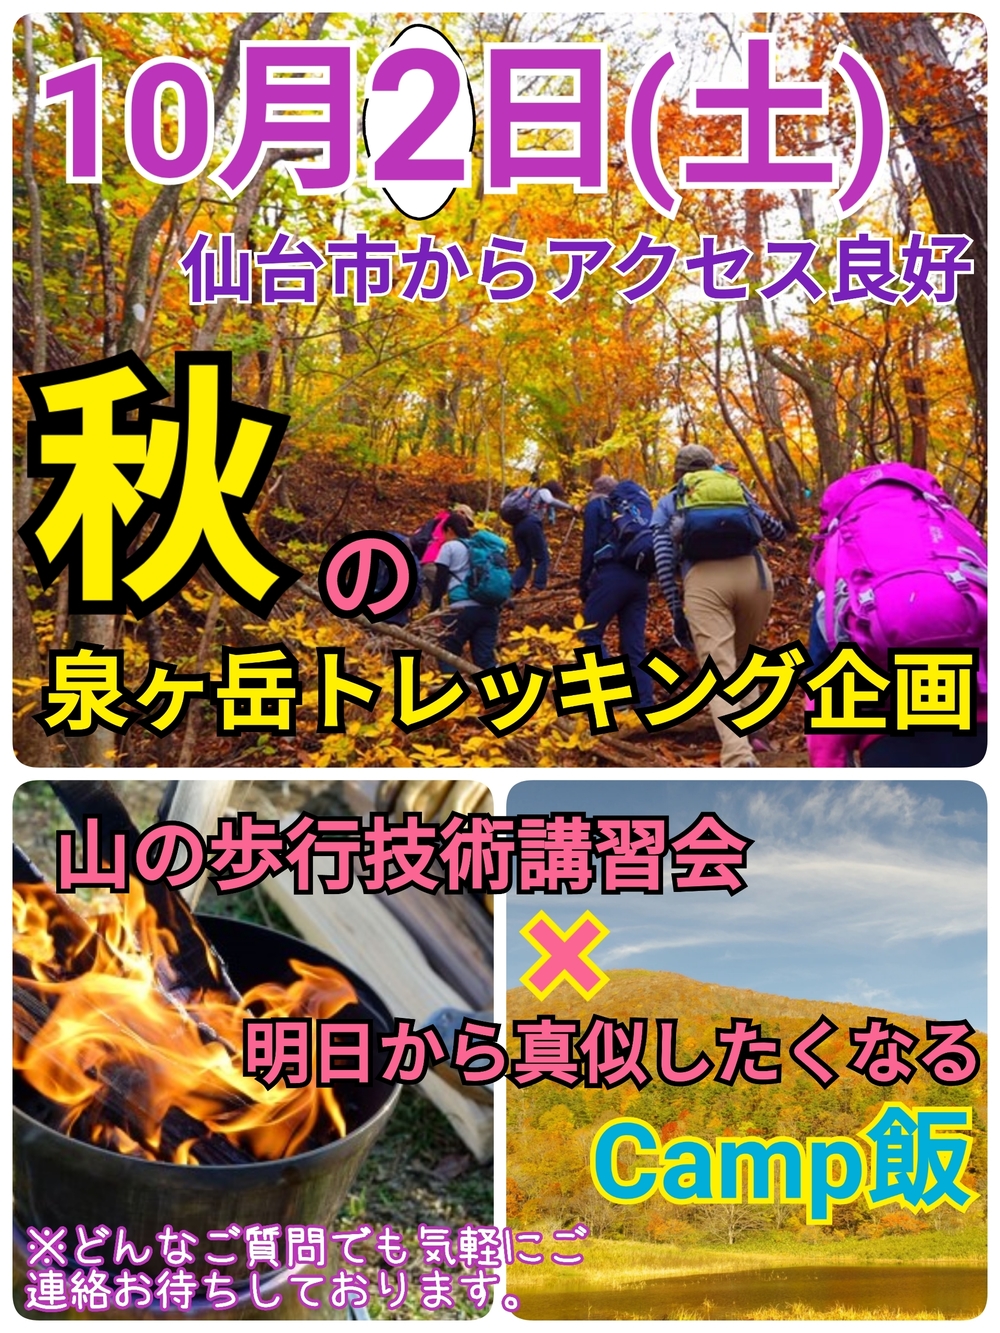 【10月2日(土)】仙台市からアクセス良好！泉ヶ岳トレッキング&Camp飯企画